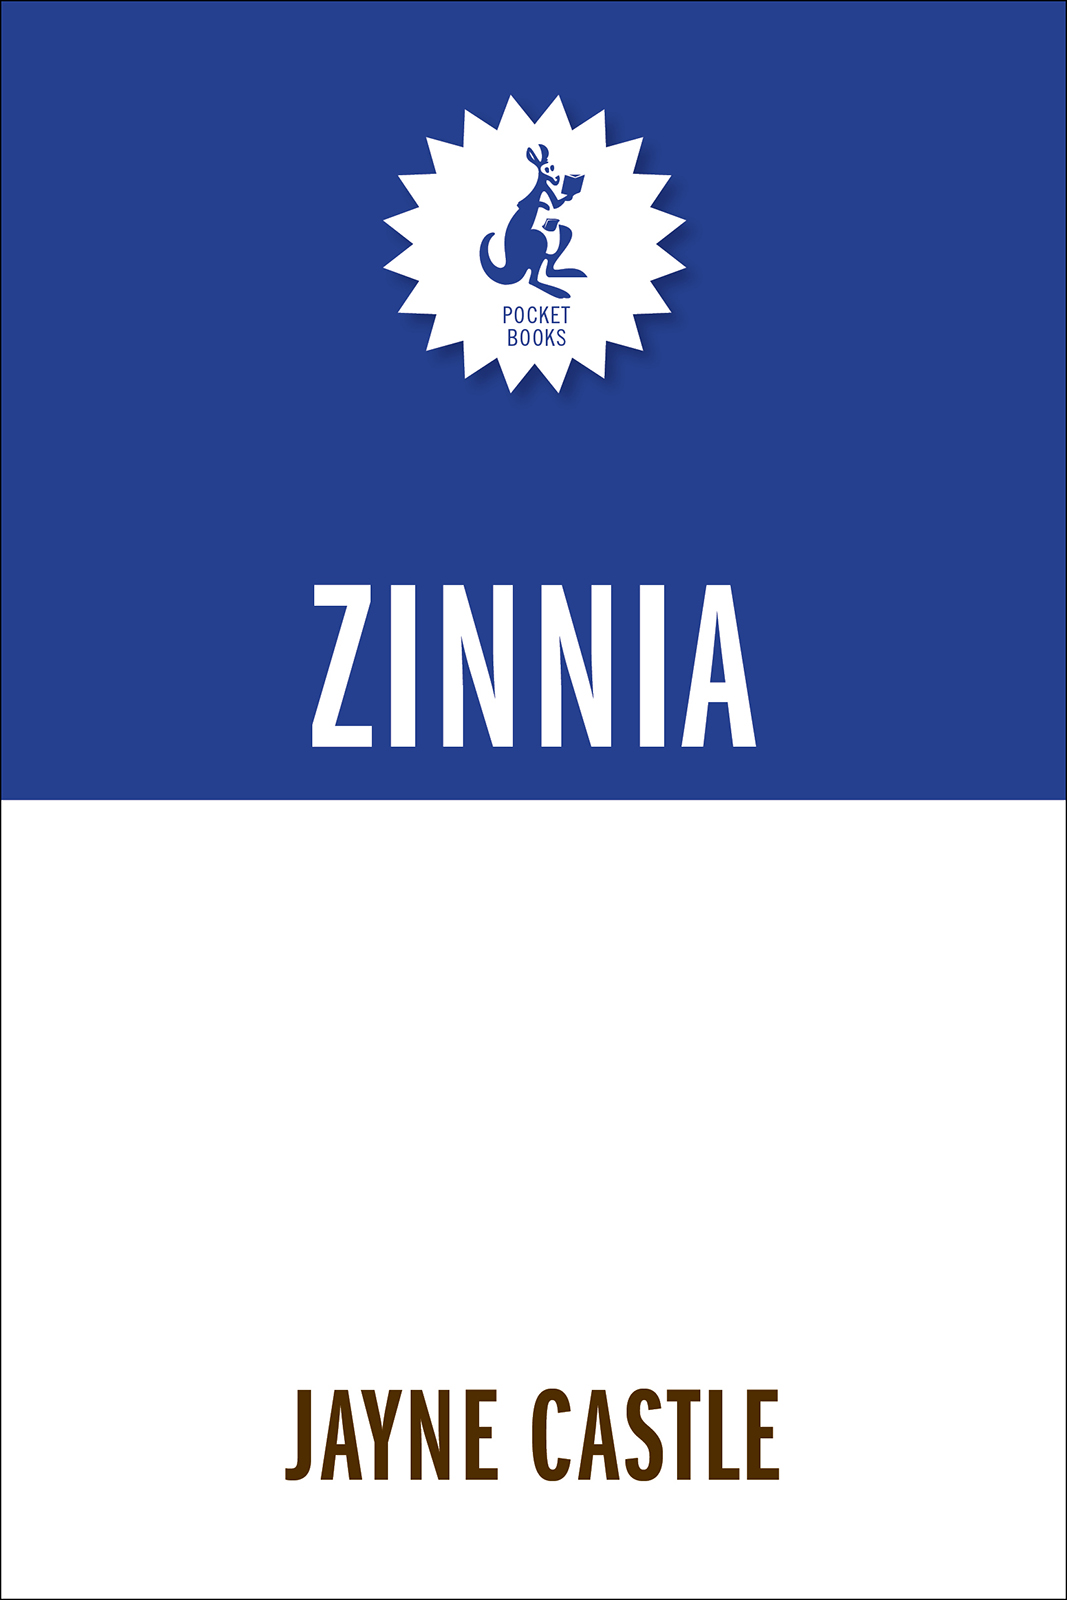 Zinnia (1997) by Jayne Castle